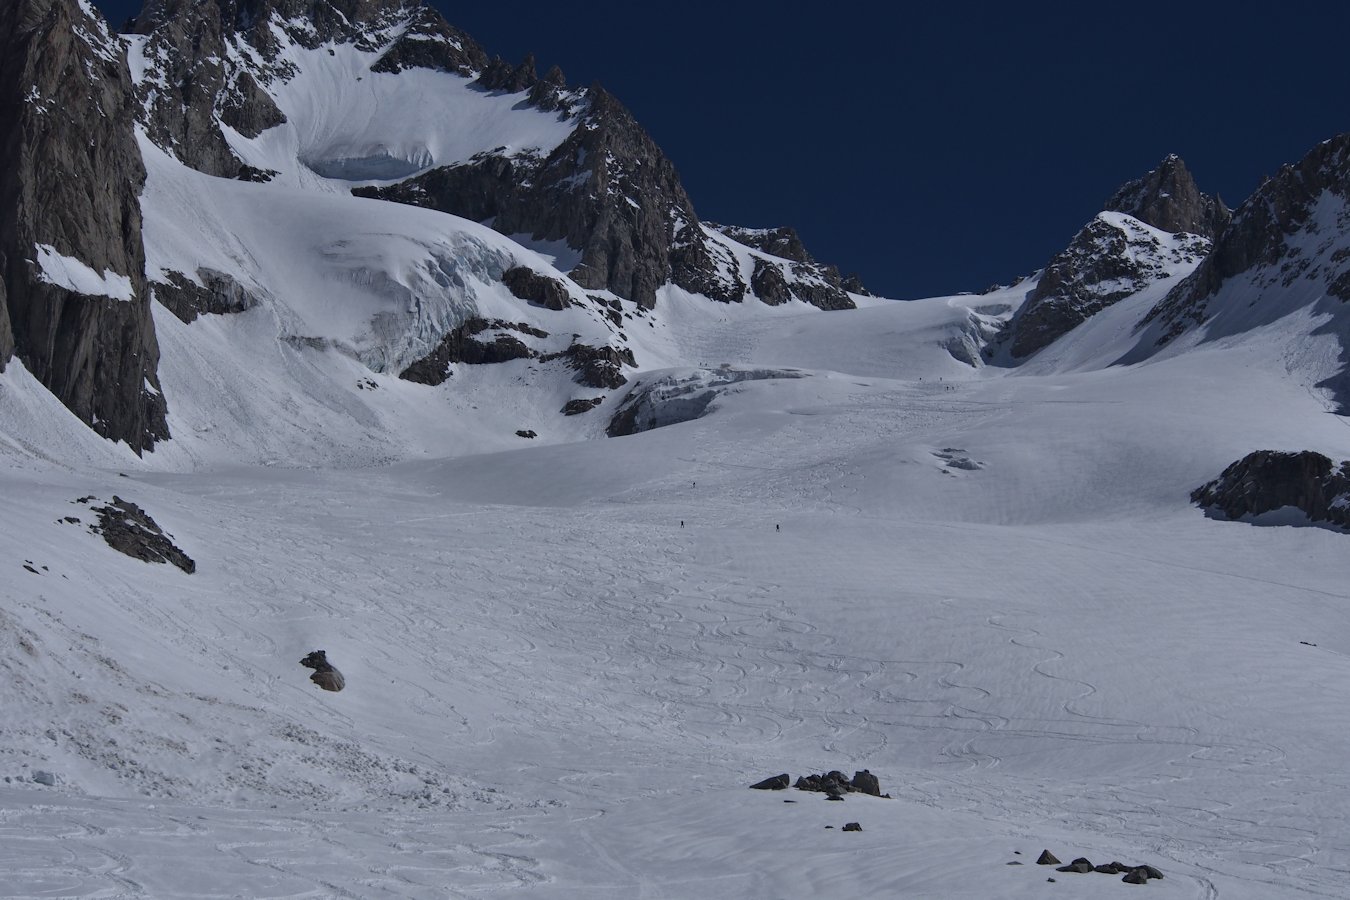 Un dernier coup d'oeil : Au pied du glacier du Tour Noir.